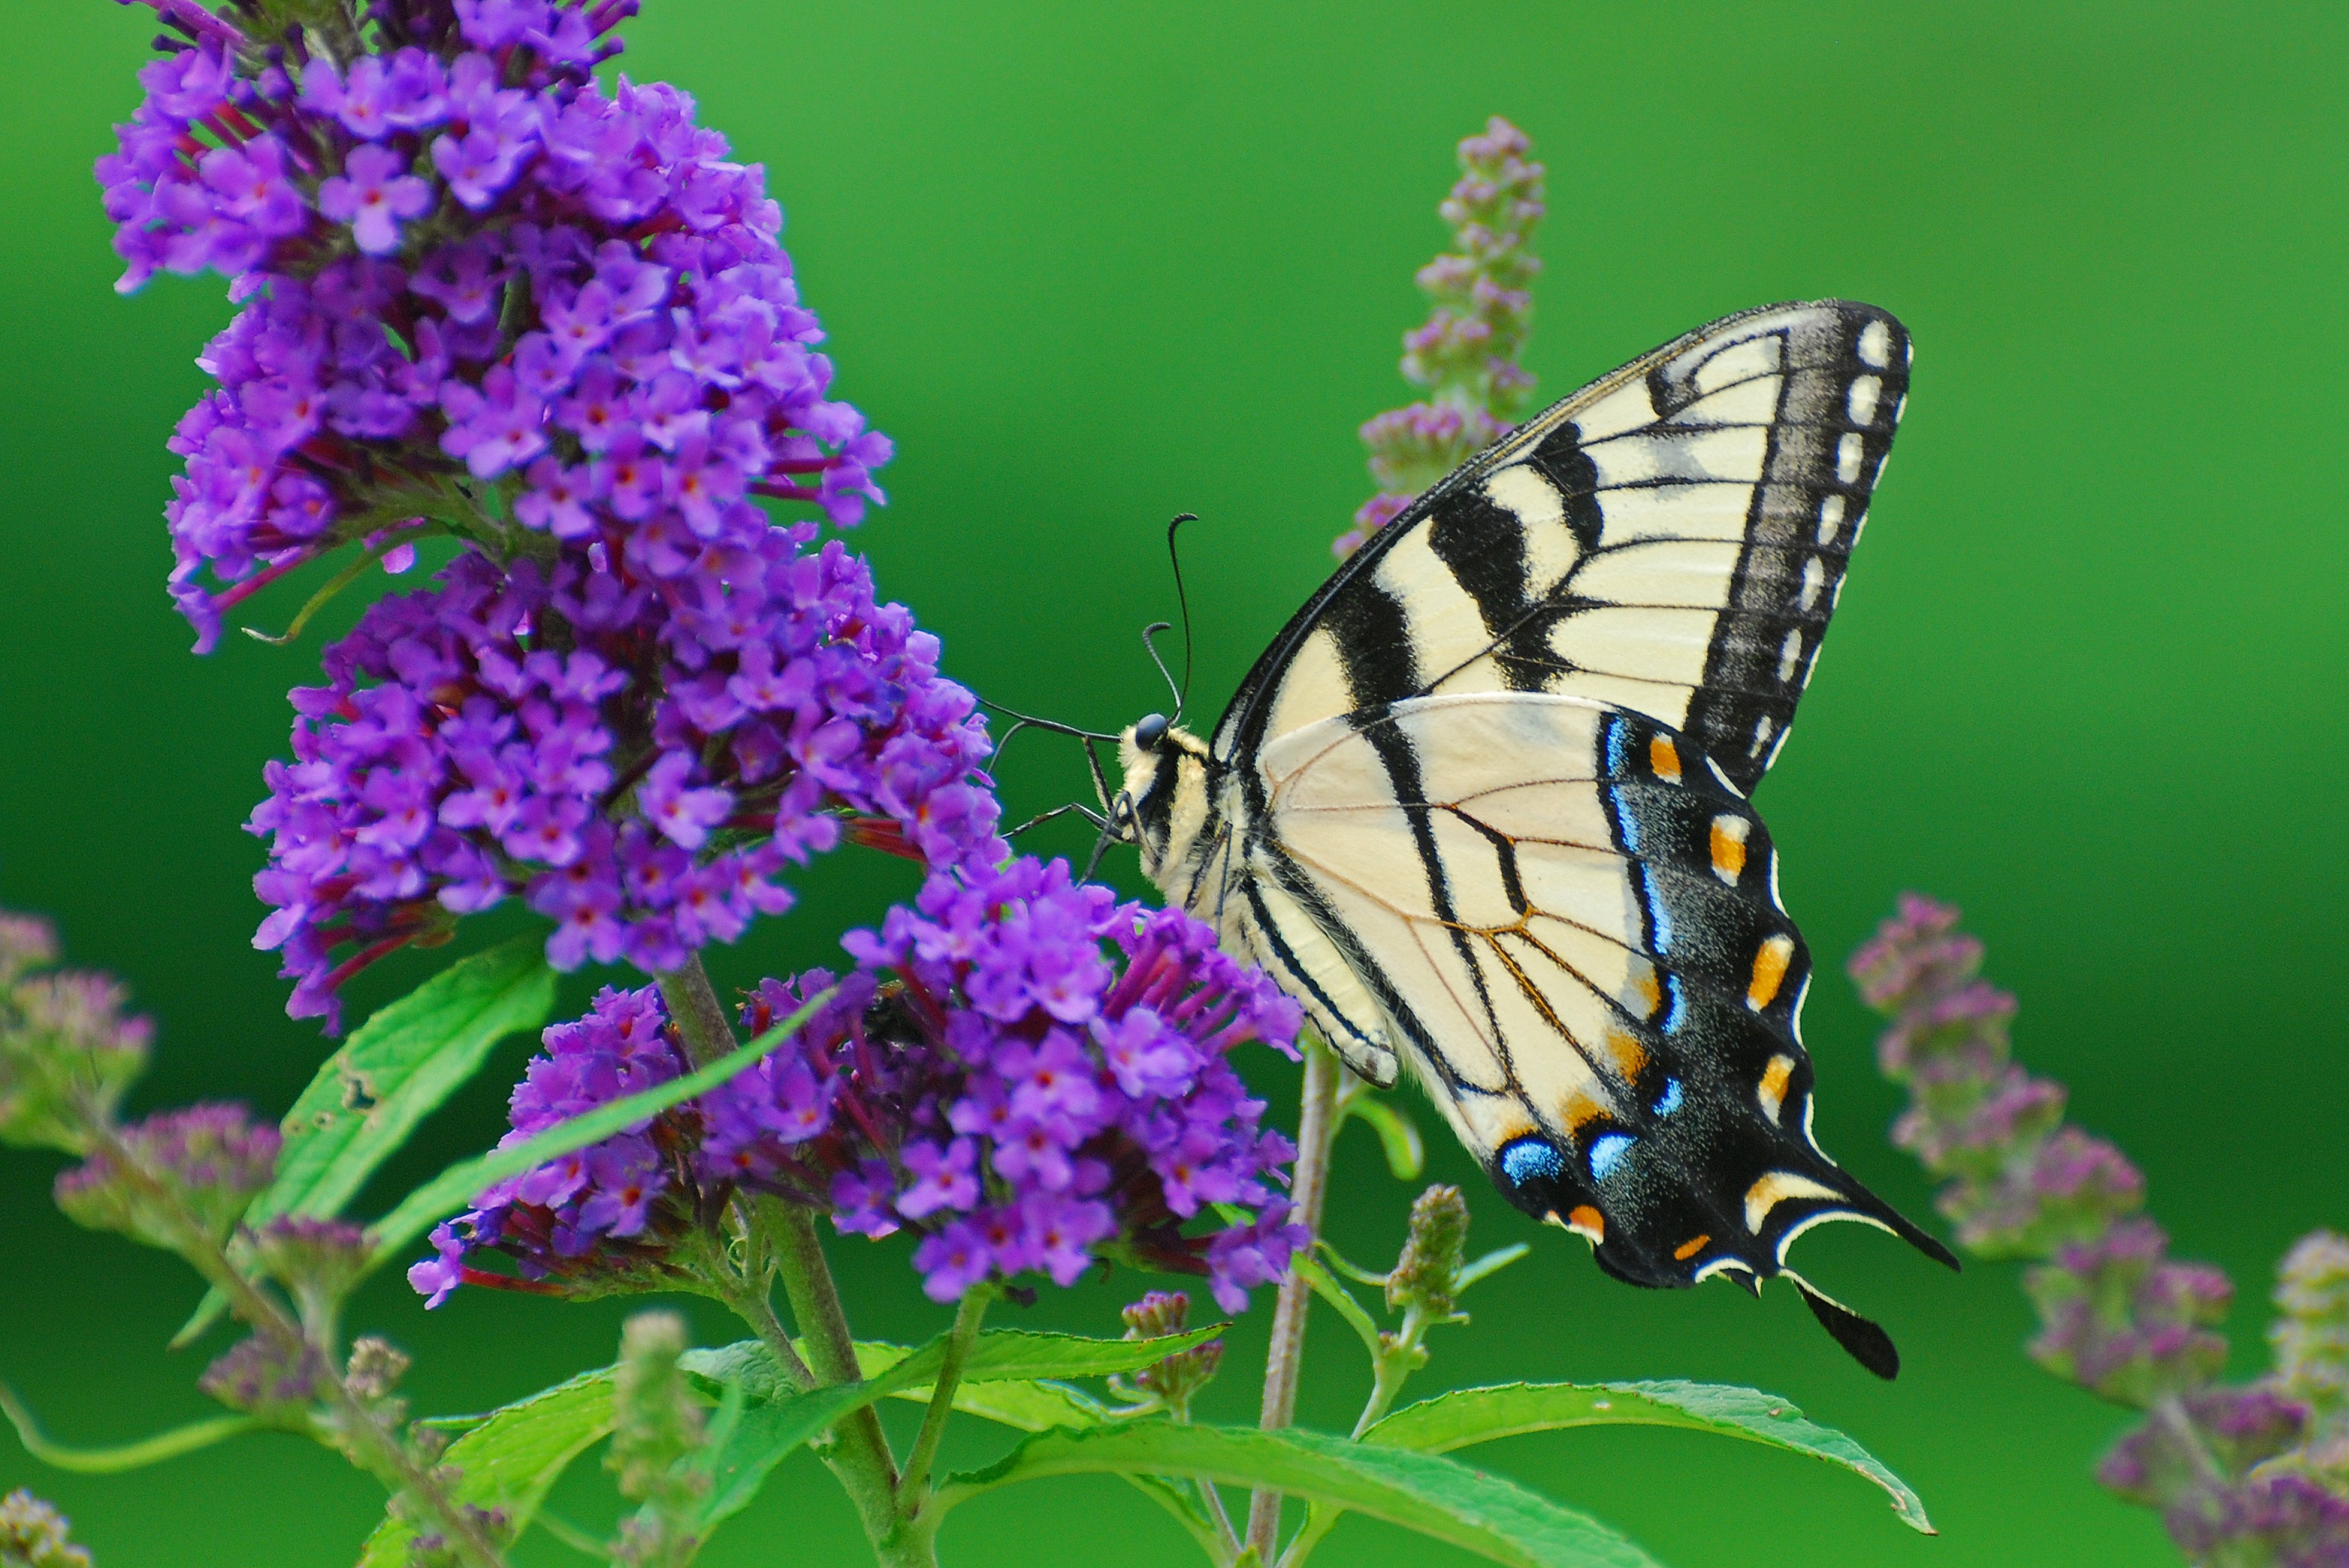 Descarga gratuita de fondo de pantalla para móvil de Animales, Flor, Insecto, Mariposa, Flor Purpura, Macrofotografía.